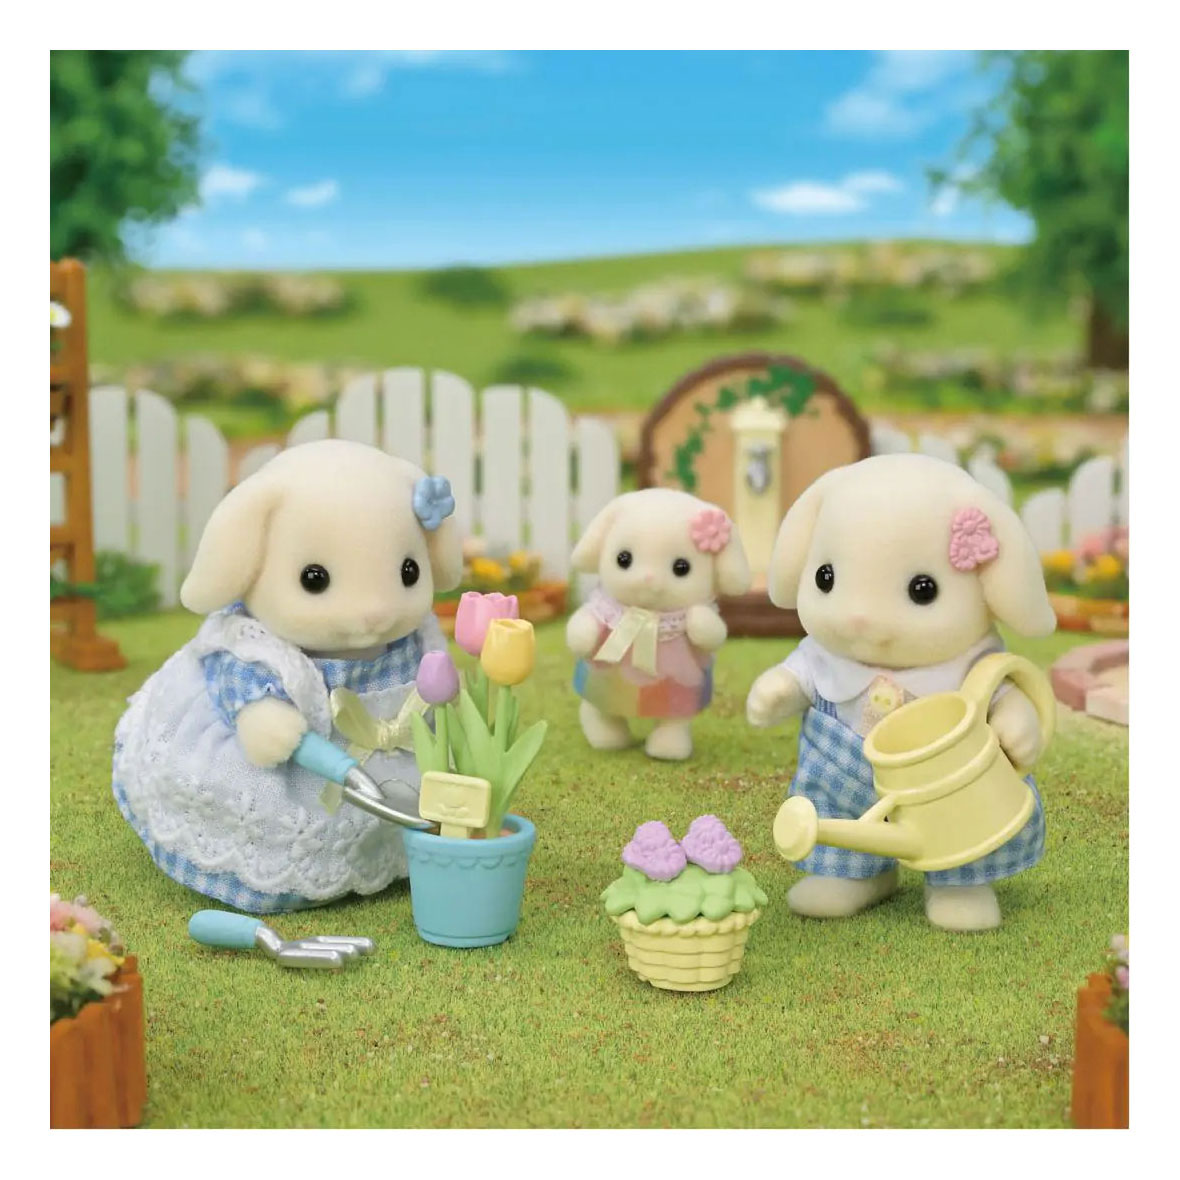 Sylvanian Families 5736 Gartenset – Flowers Lop Rabbit Bruder und Schwester